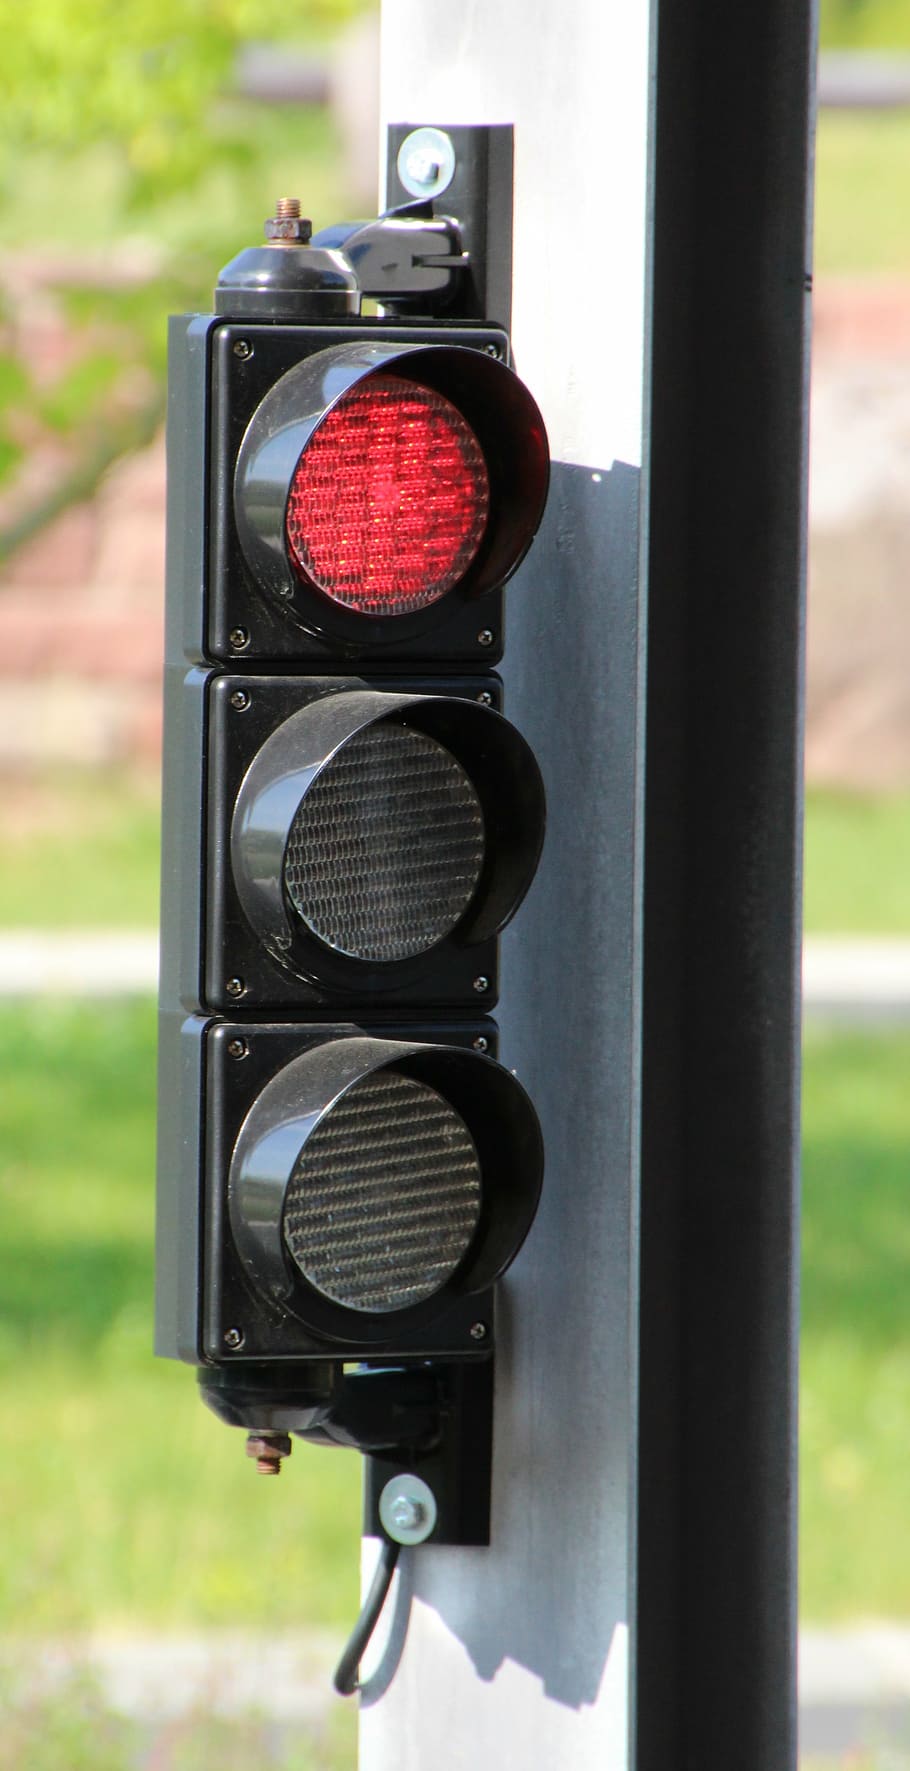 lampu lalu lintas, merah, sinyal lampu, stop, sinyal lampu lalu lintas, sinyal lalu lintas, jalan, lampu lalu lintas merah, tidak ada orang, tanda